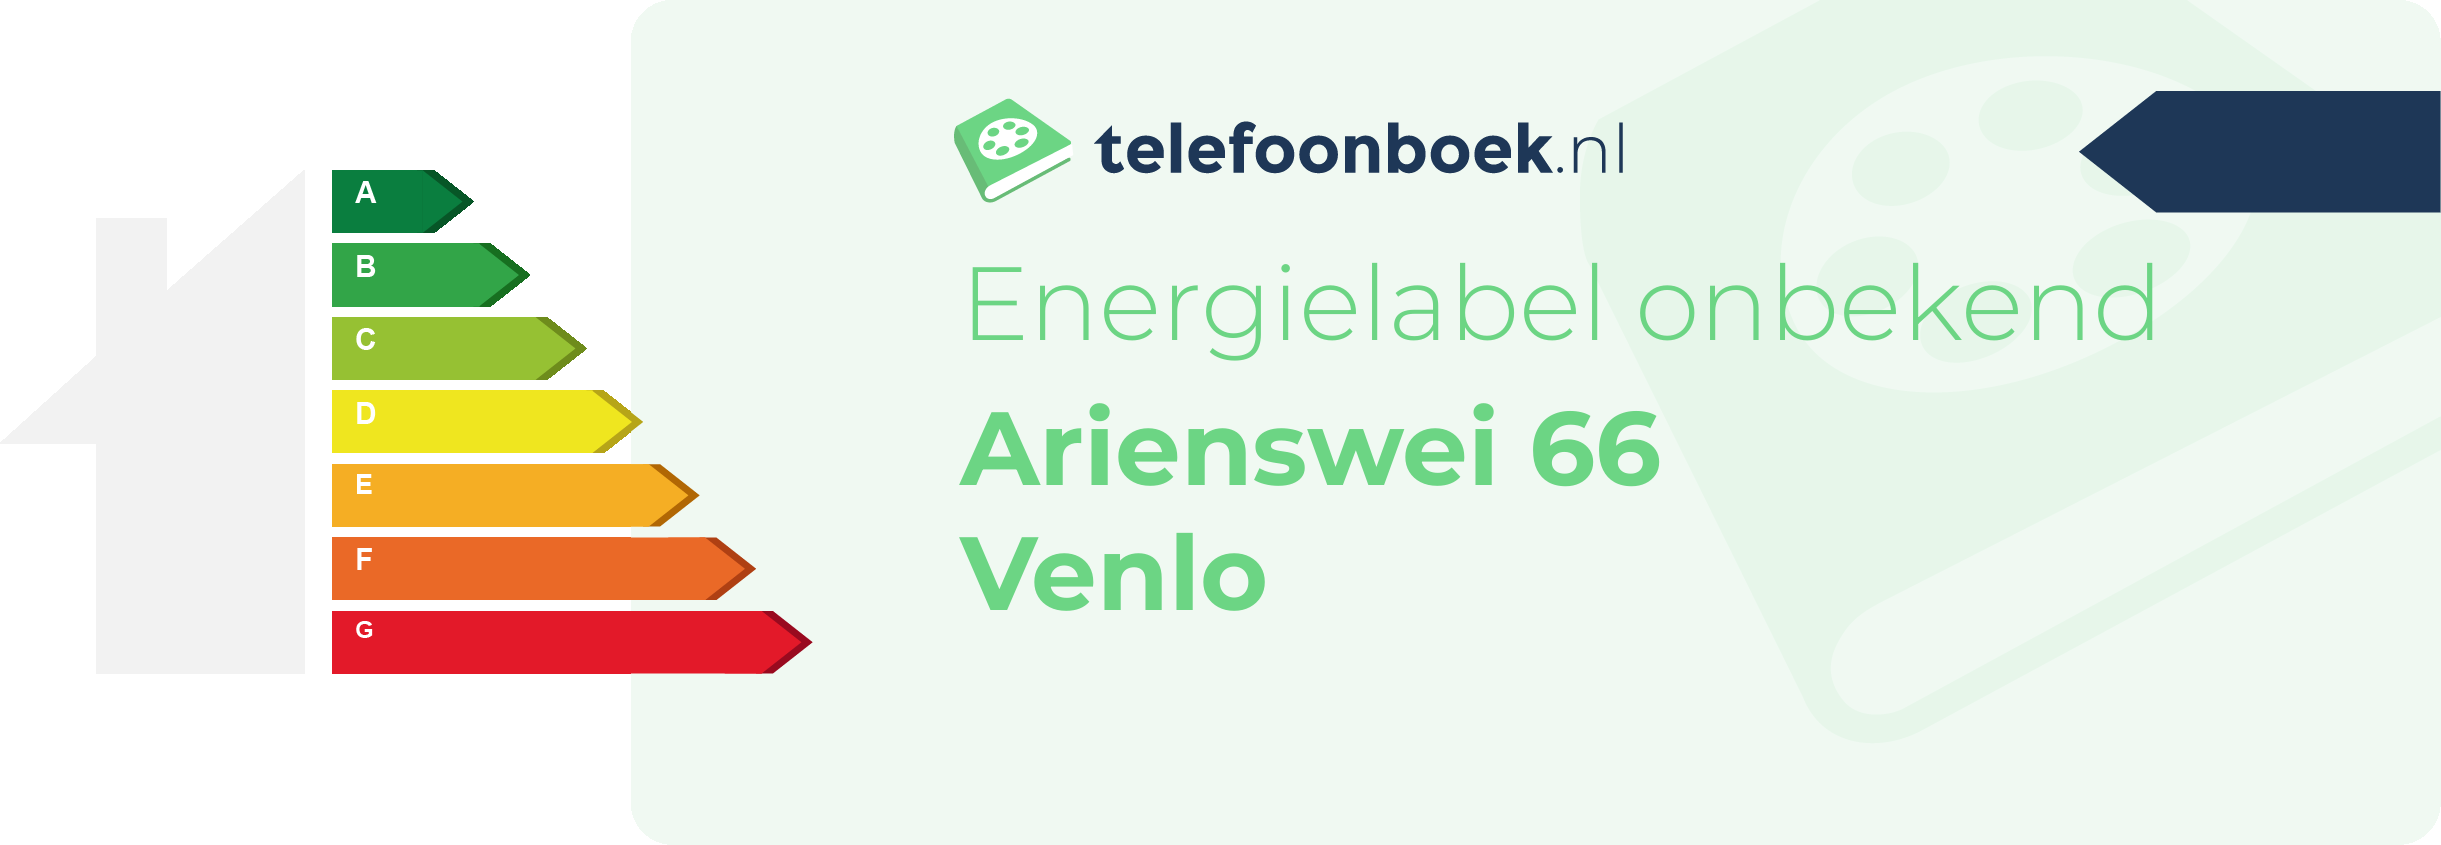 Energielabel Arienswei 66 Venlo